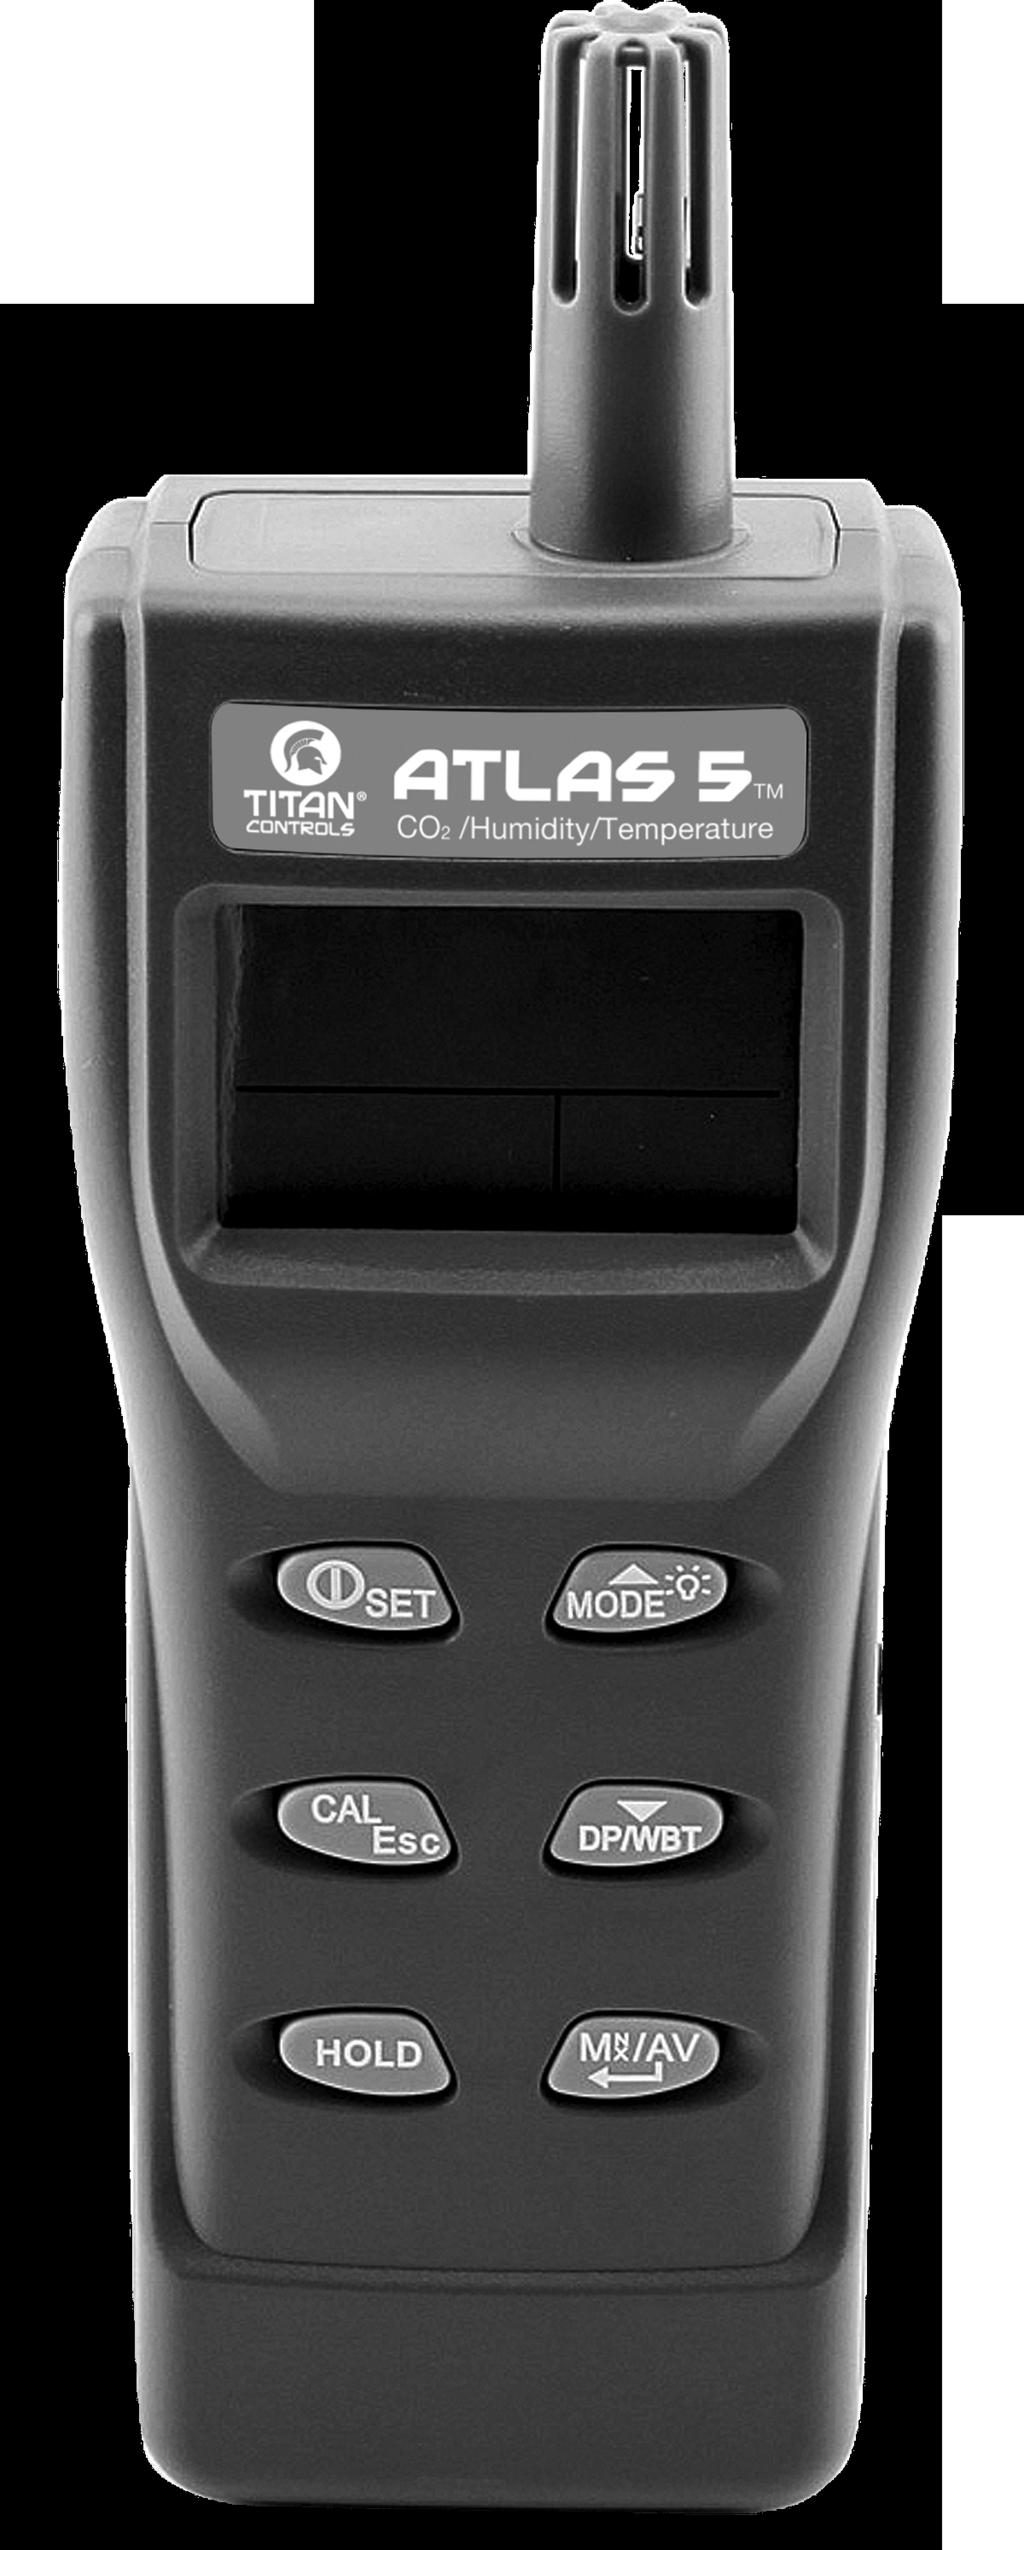 Atlas 5 TM Handheld